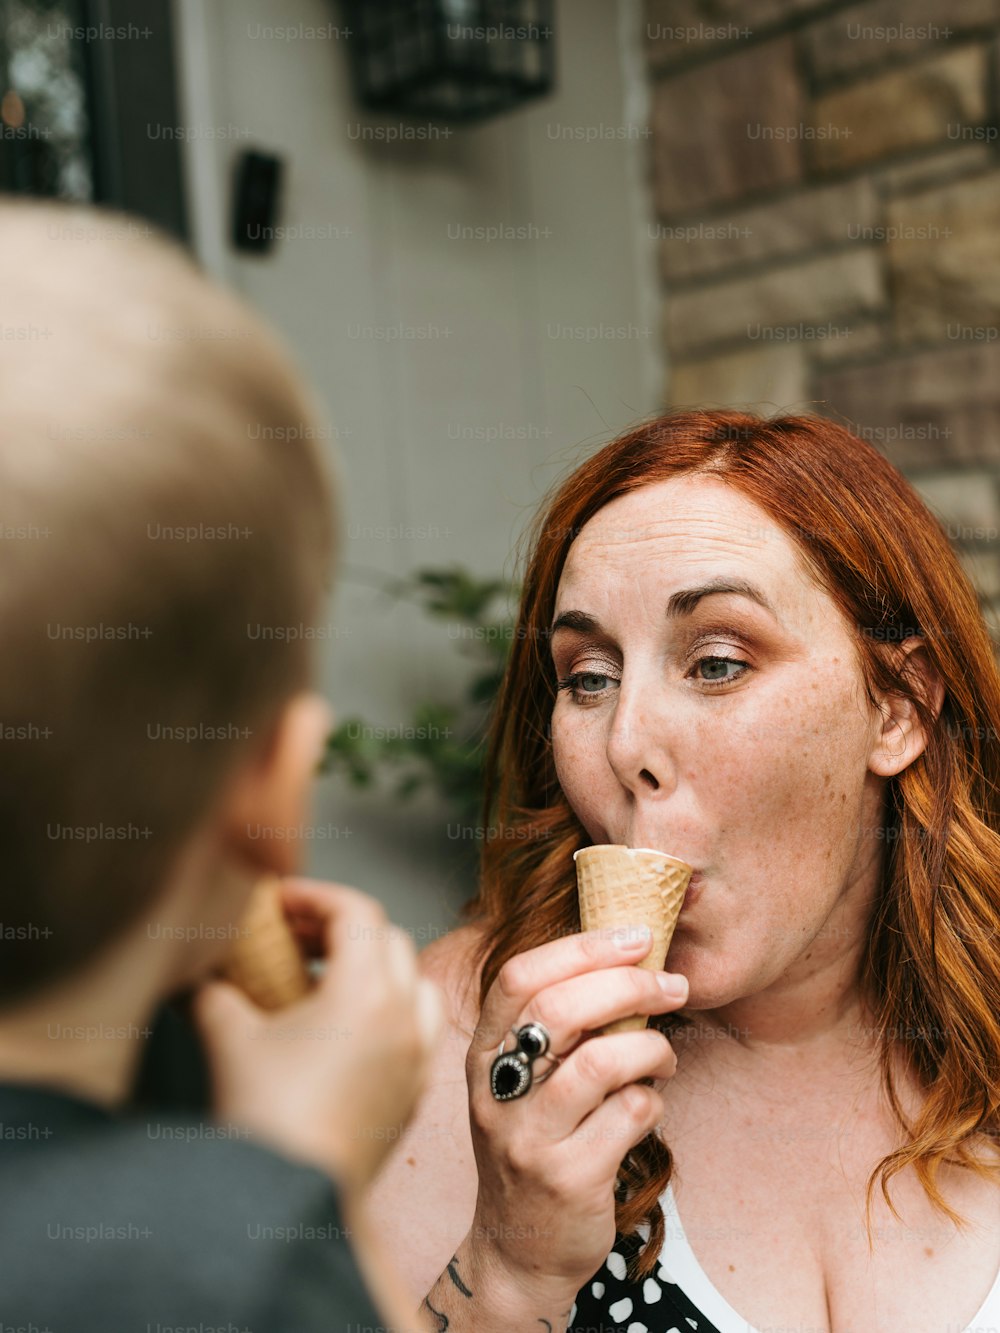 Une femme mangeant un cornet de crème glacée devant un homme